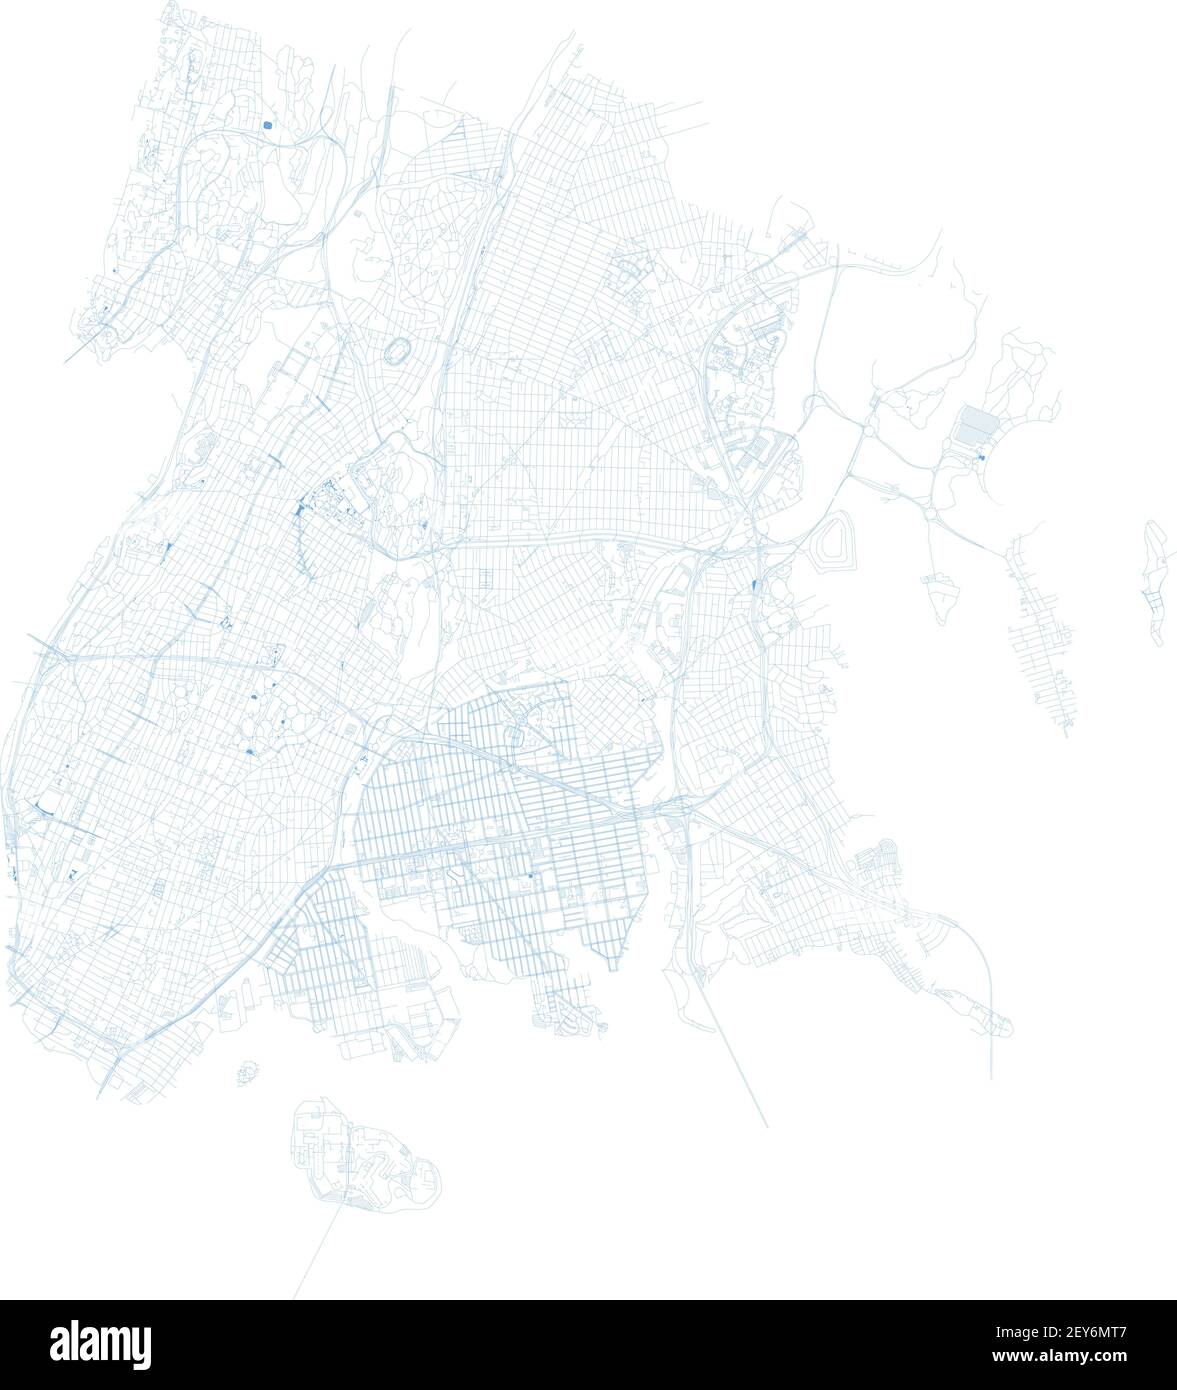 La carte du Bronx, New York, les quartiers, l'administration gouvernementale. Rues et quartier. Plan de la ville. États-Unis Illustration de Vecteur